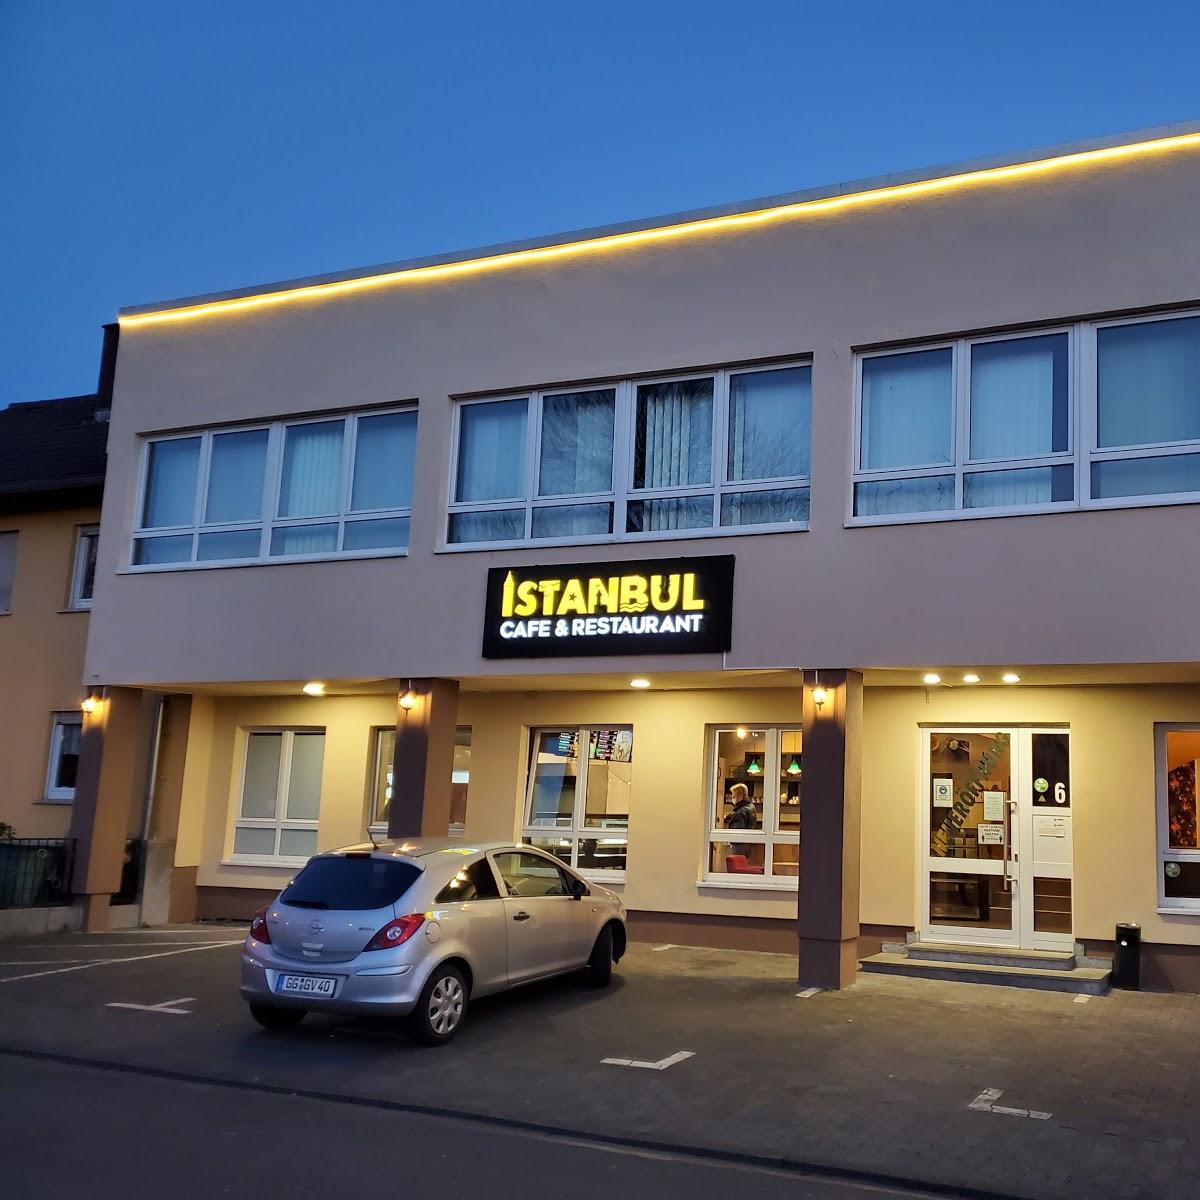 Restaurant "Restaurant Istanbul" in Raunheim